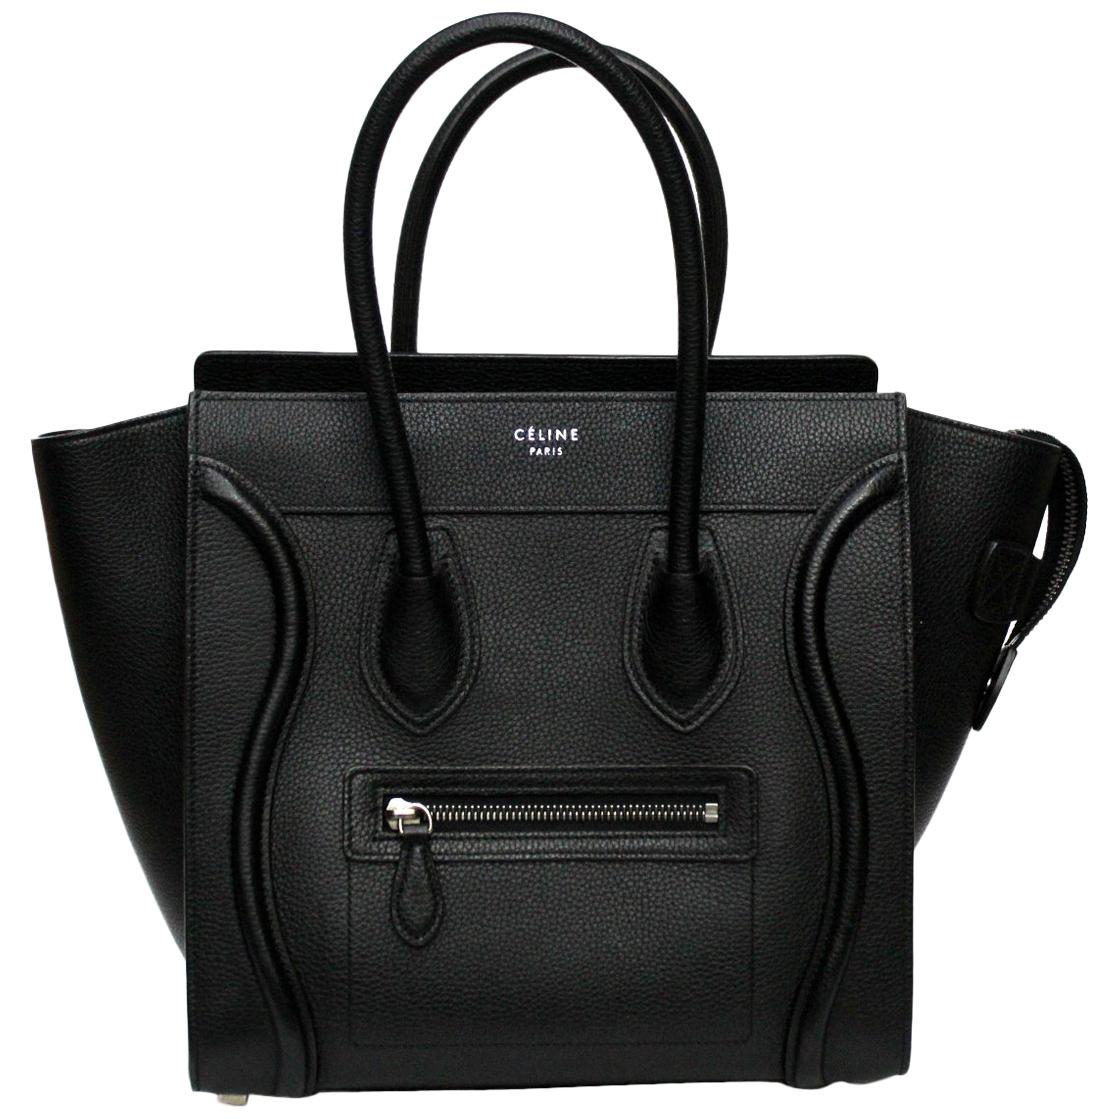 Celine Black Leather Boston Luggage Handbag